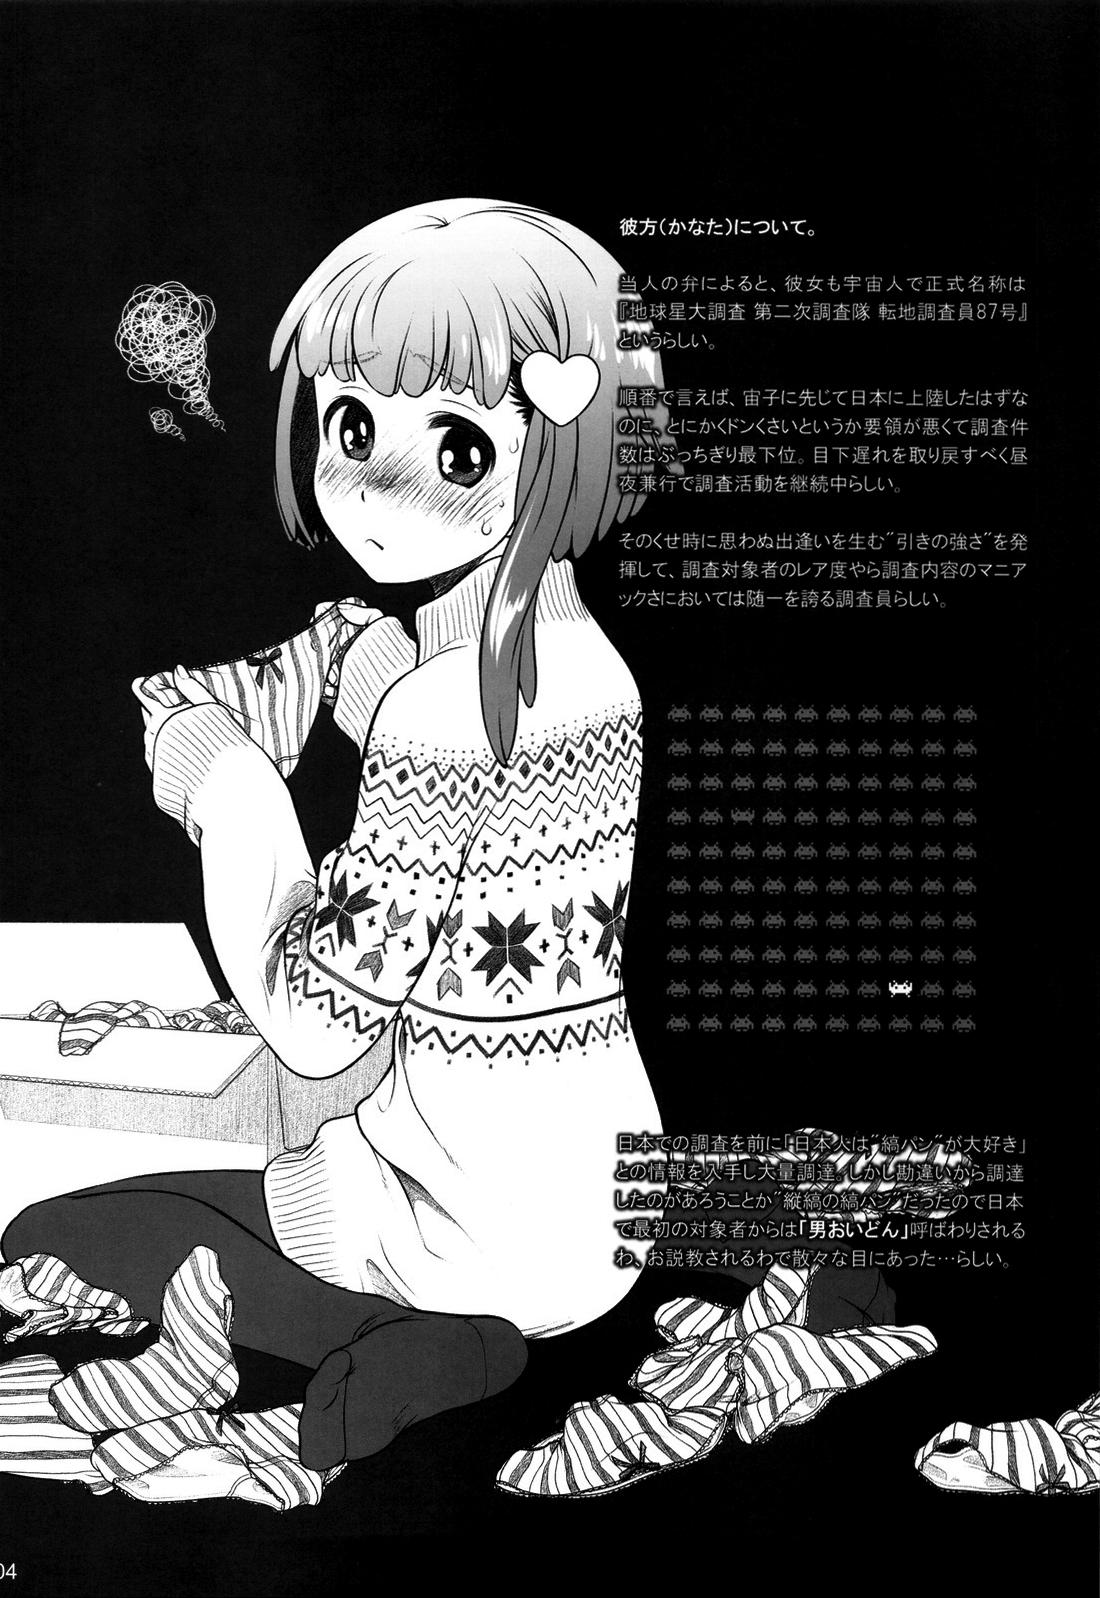 Penis Sucking Sorako no Tabi 4 - Kanata no Tabi Small - Page 3